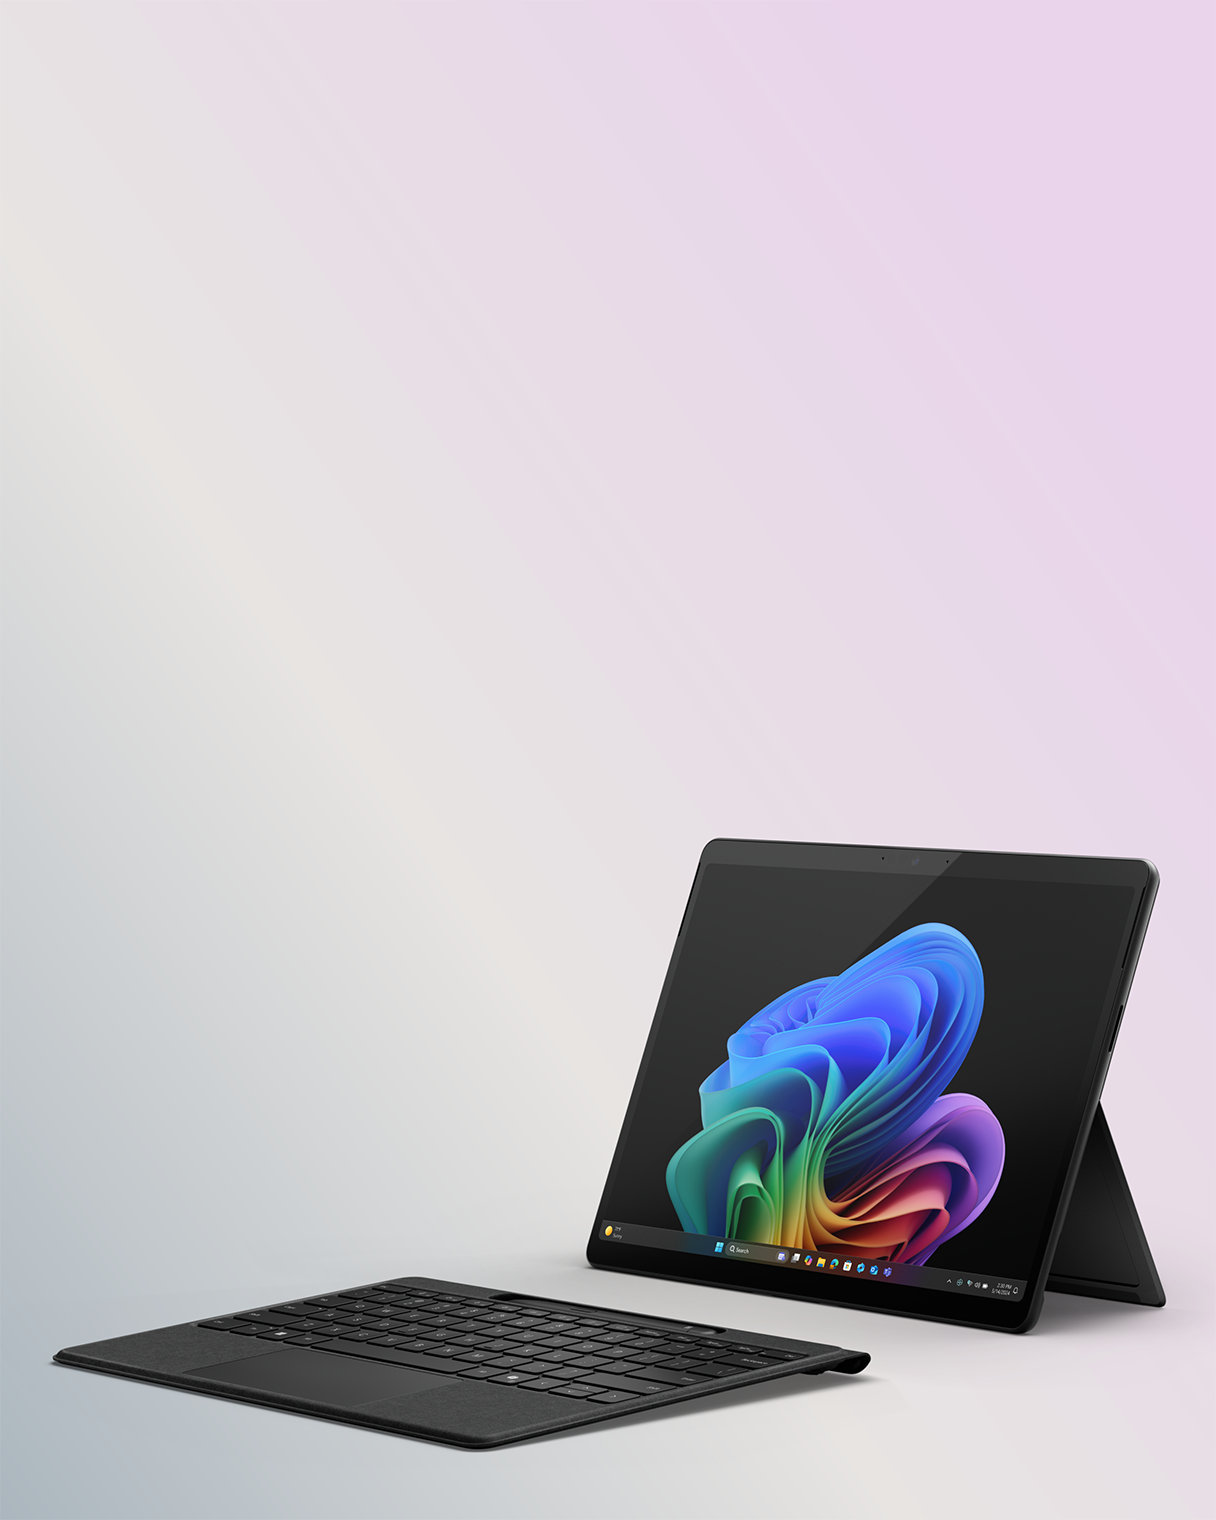 키보드를 제거하고 태블릿 모드로 설정한 Surface Pro의 이미지